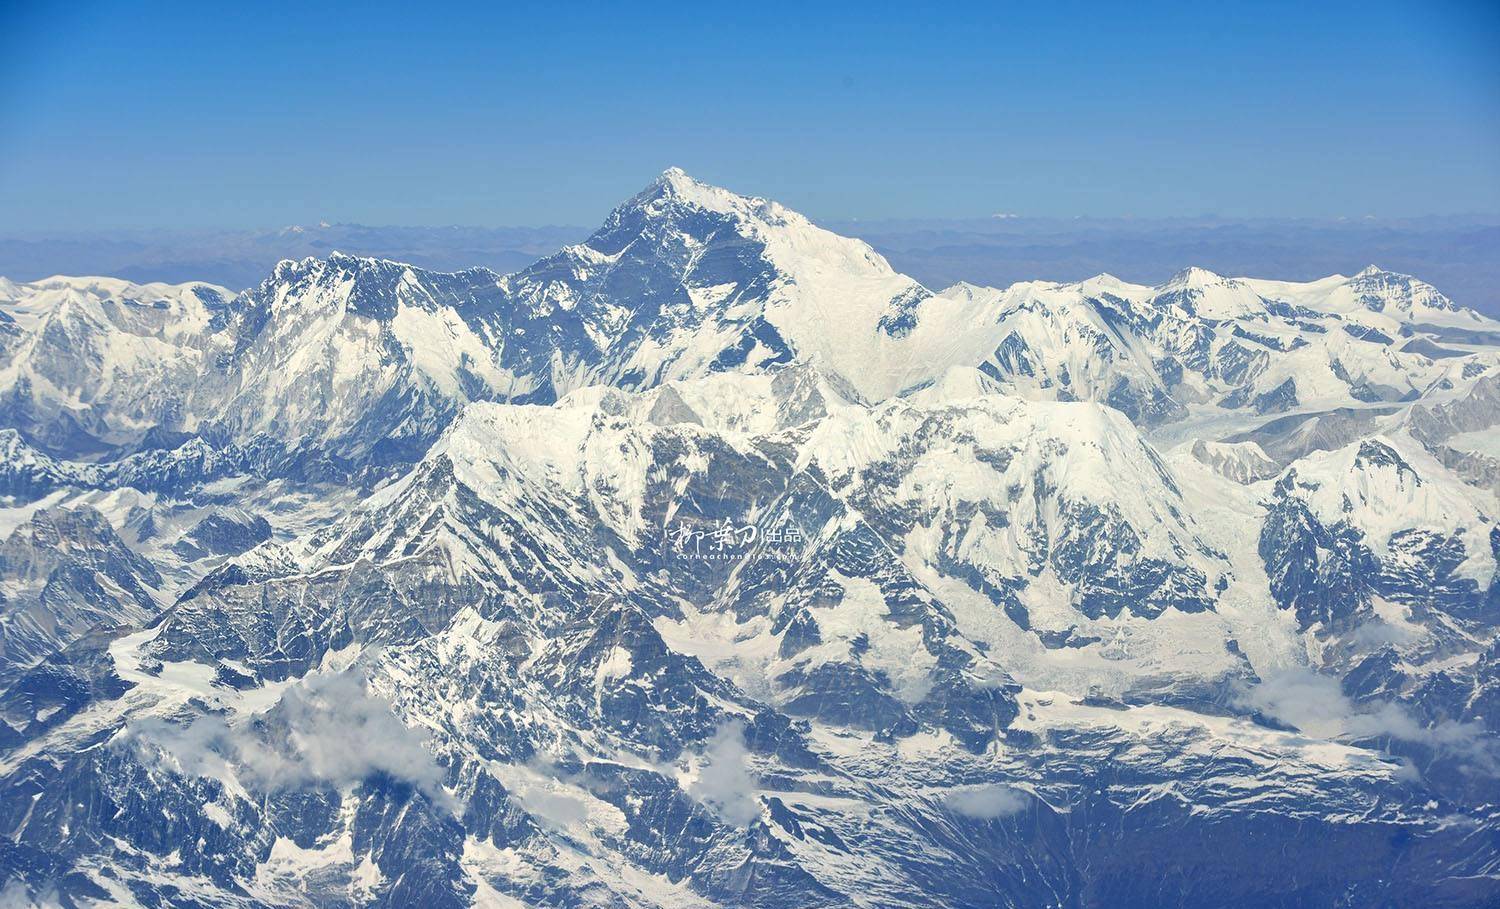 珠穆朗玛峰每年都在移动,万年冰川世间罕见,巍峨雪山瑰丽壮观_景区